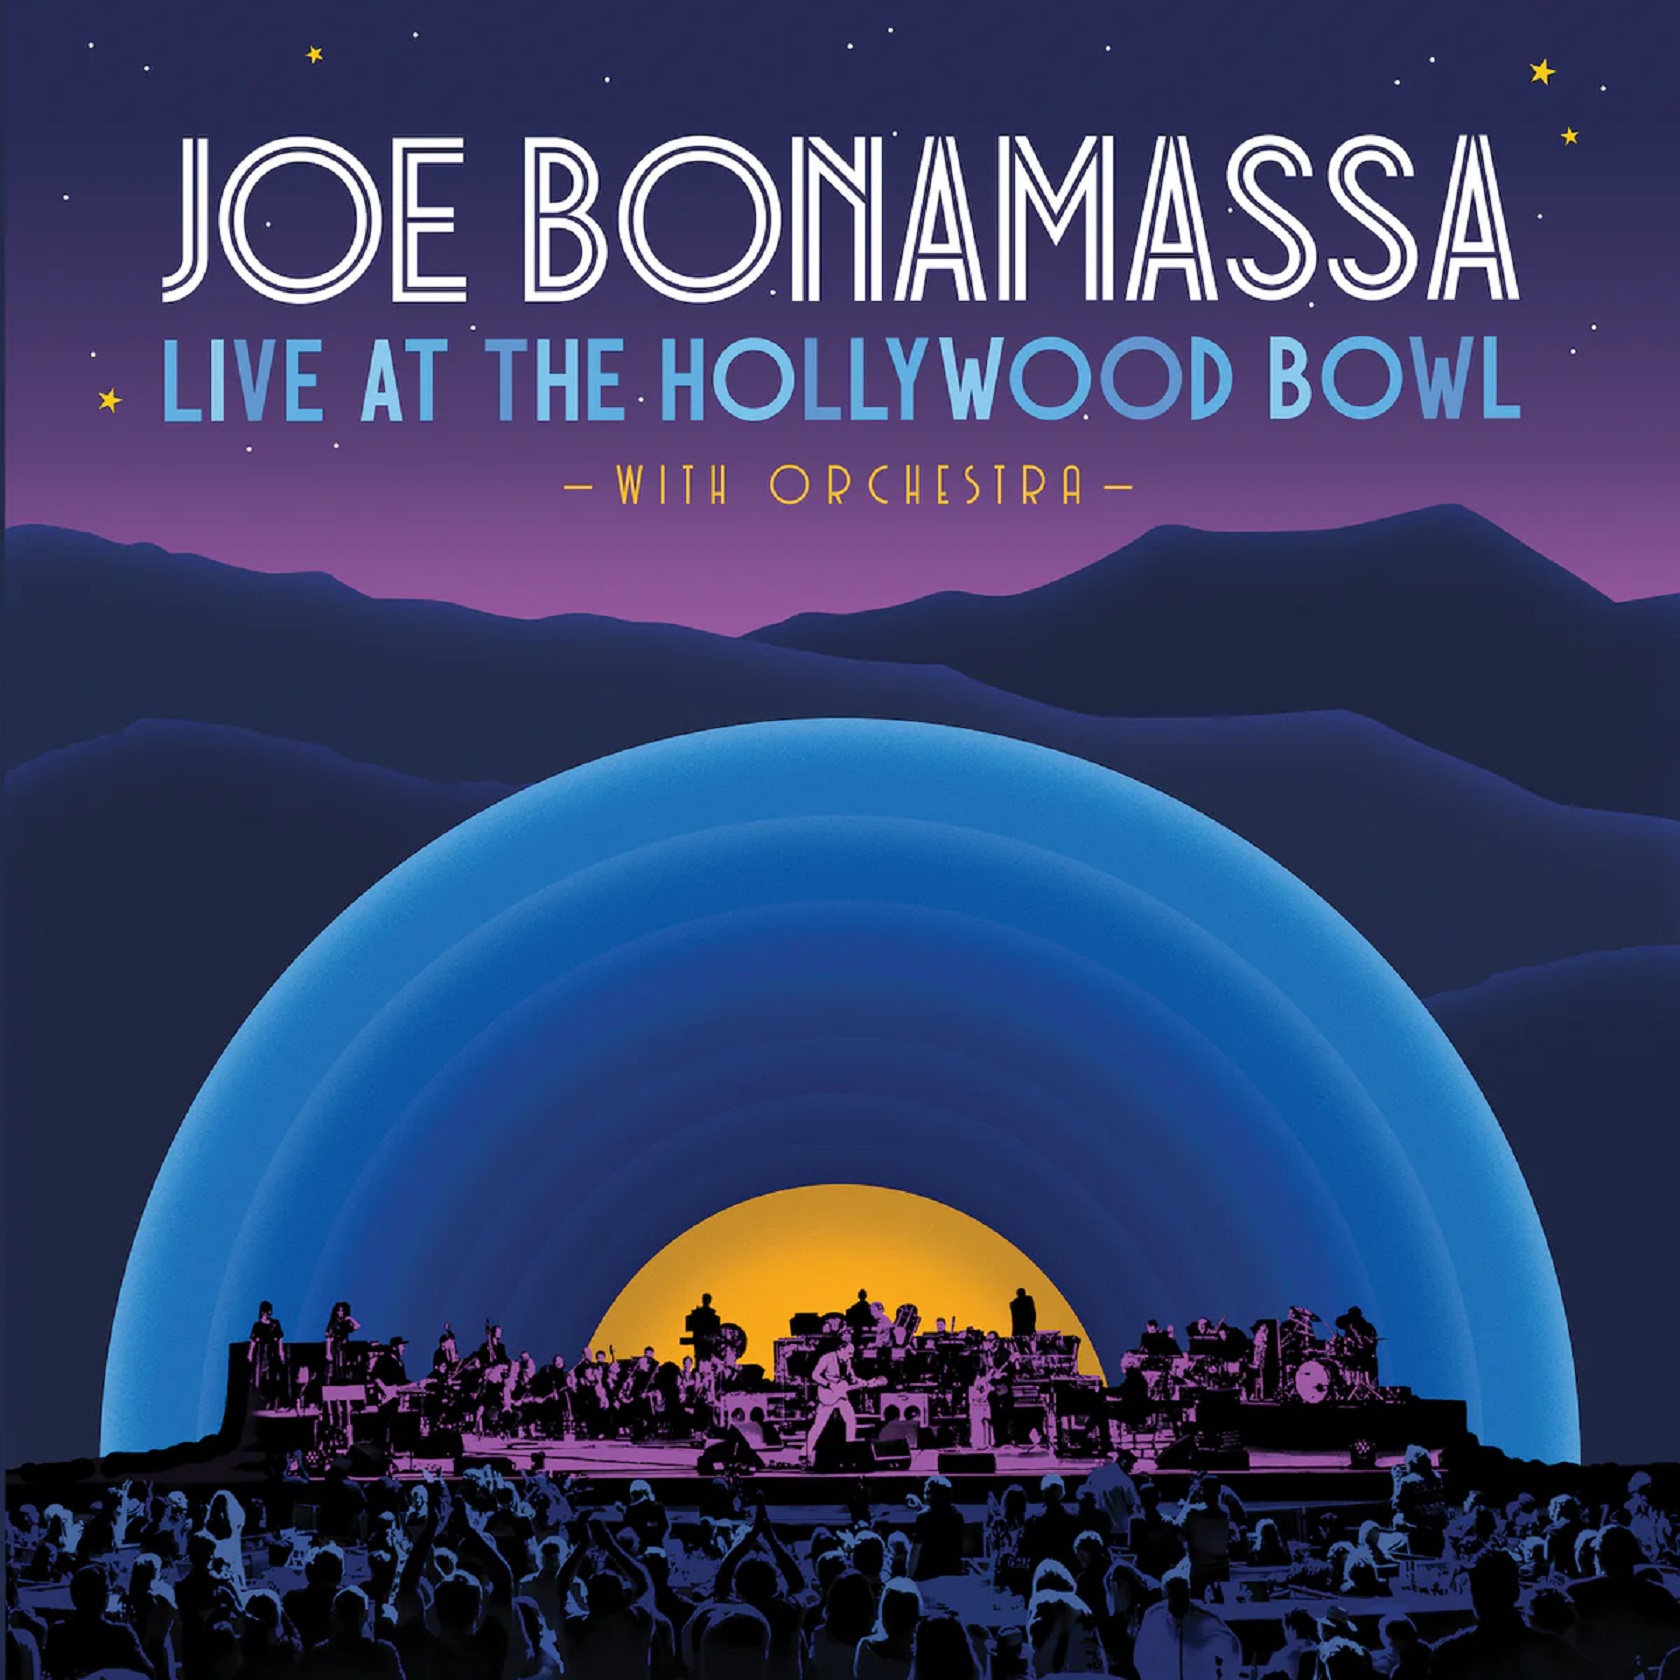 Joe Bonamassa Releases Live Rendition Of "Ball Peen Hammer" w/ Orchestra External